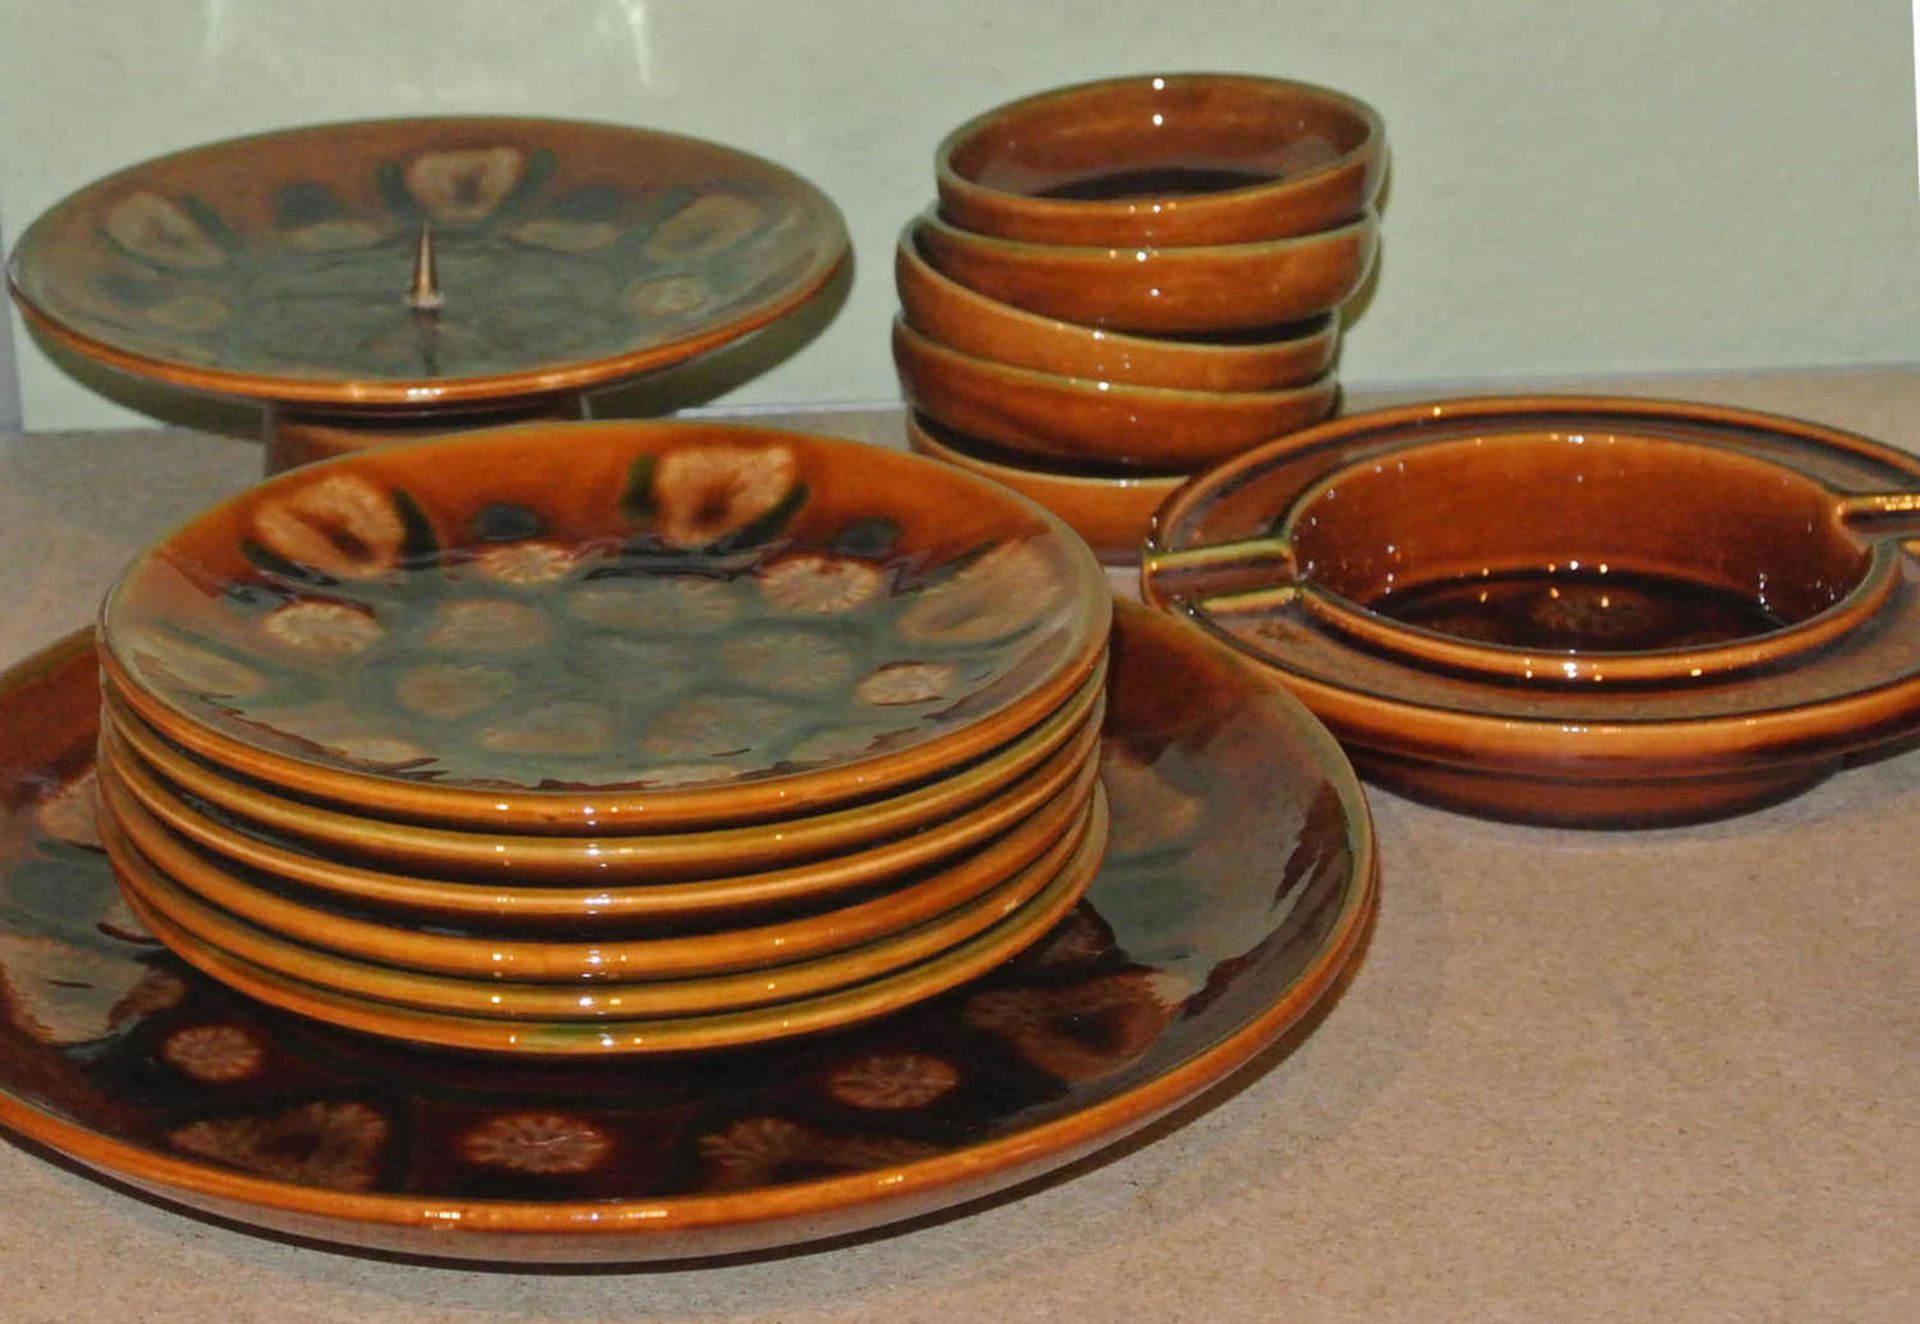 1 Keramik-Set Grünstadter Keramik, bestehend aus 14 Teilen, schöne ausgefallene Lasur. Guter